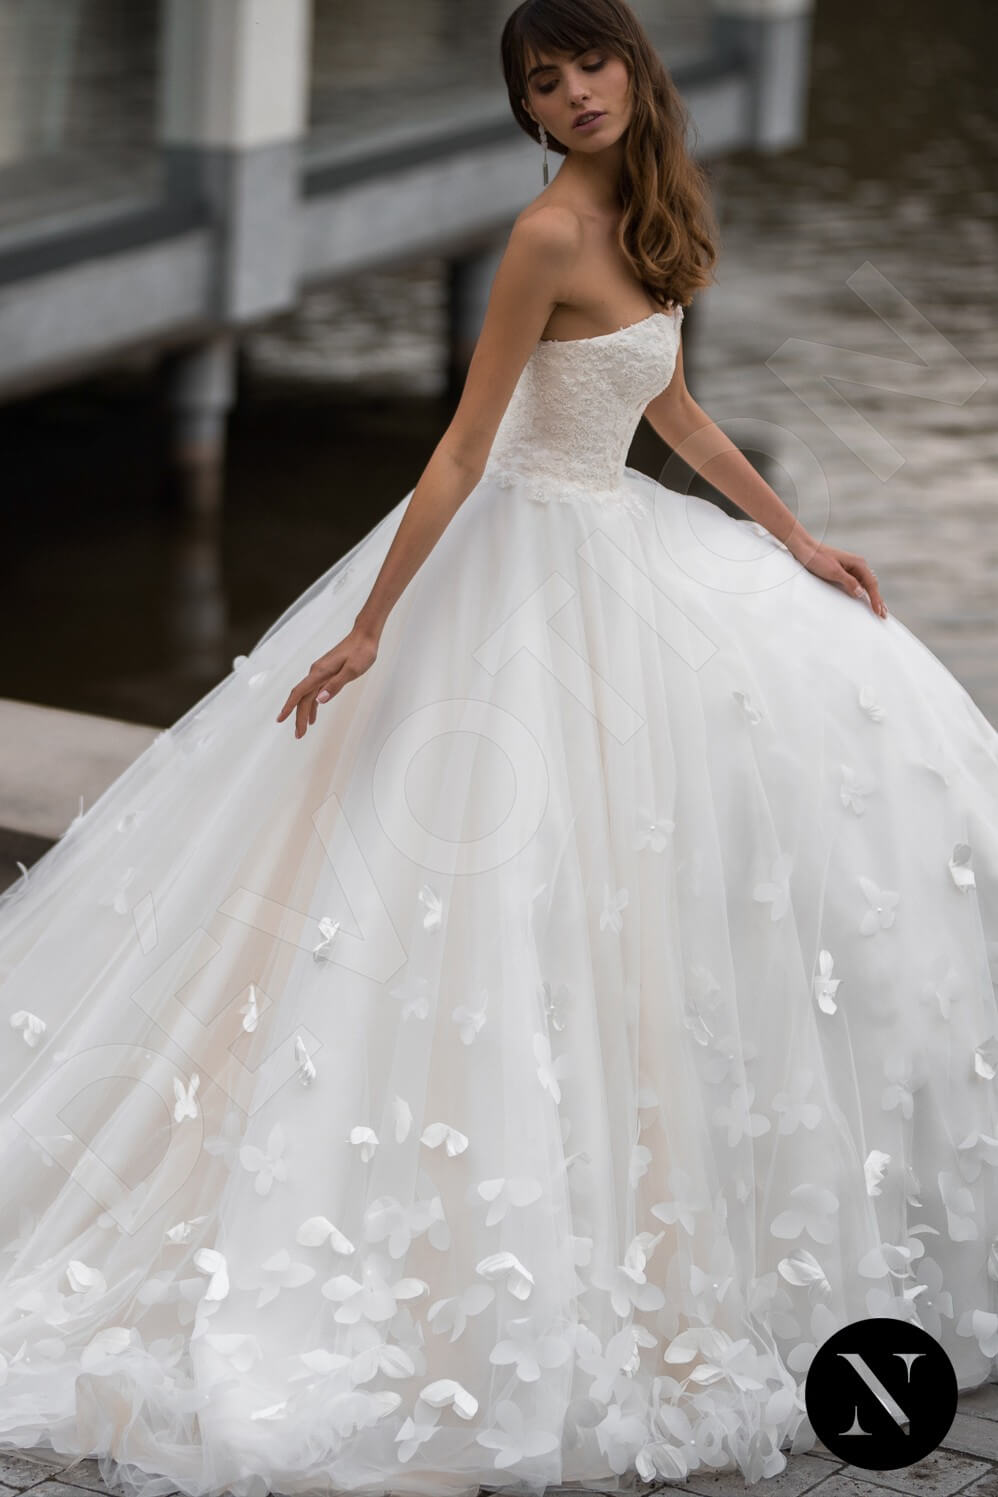 Esperanza Open back Princess/Ball Gown Strapless Wedding Dress 4